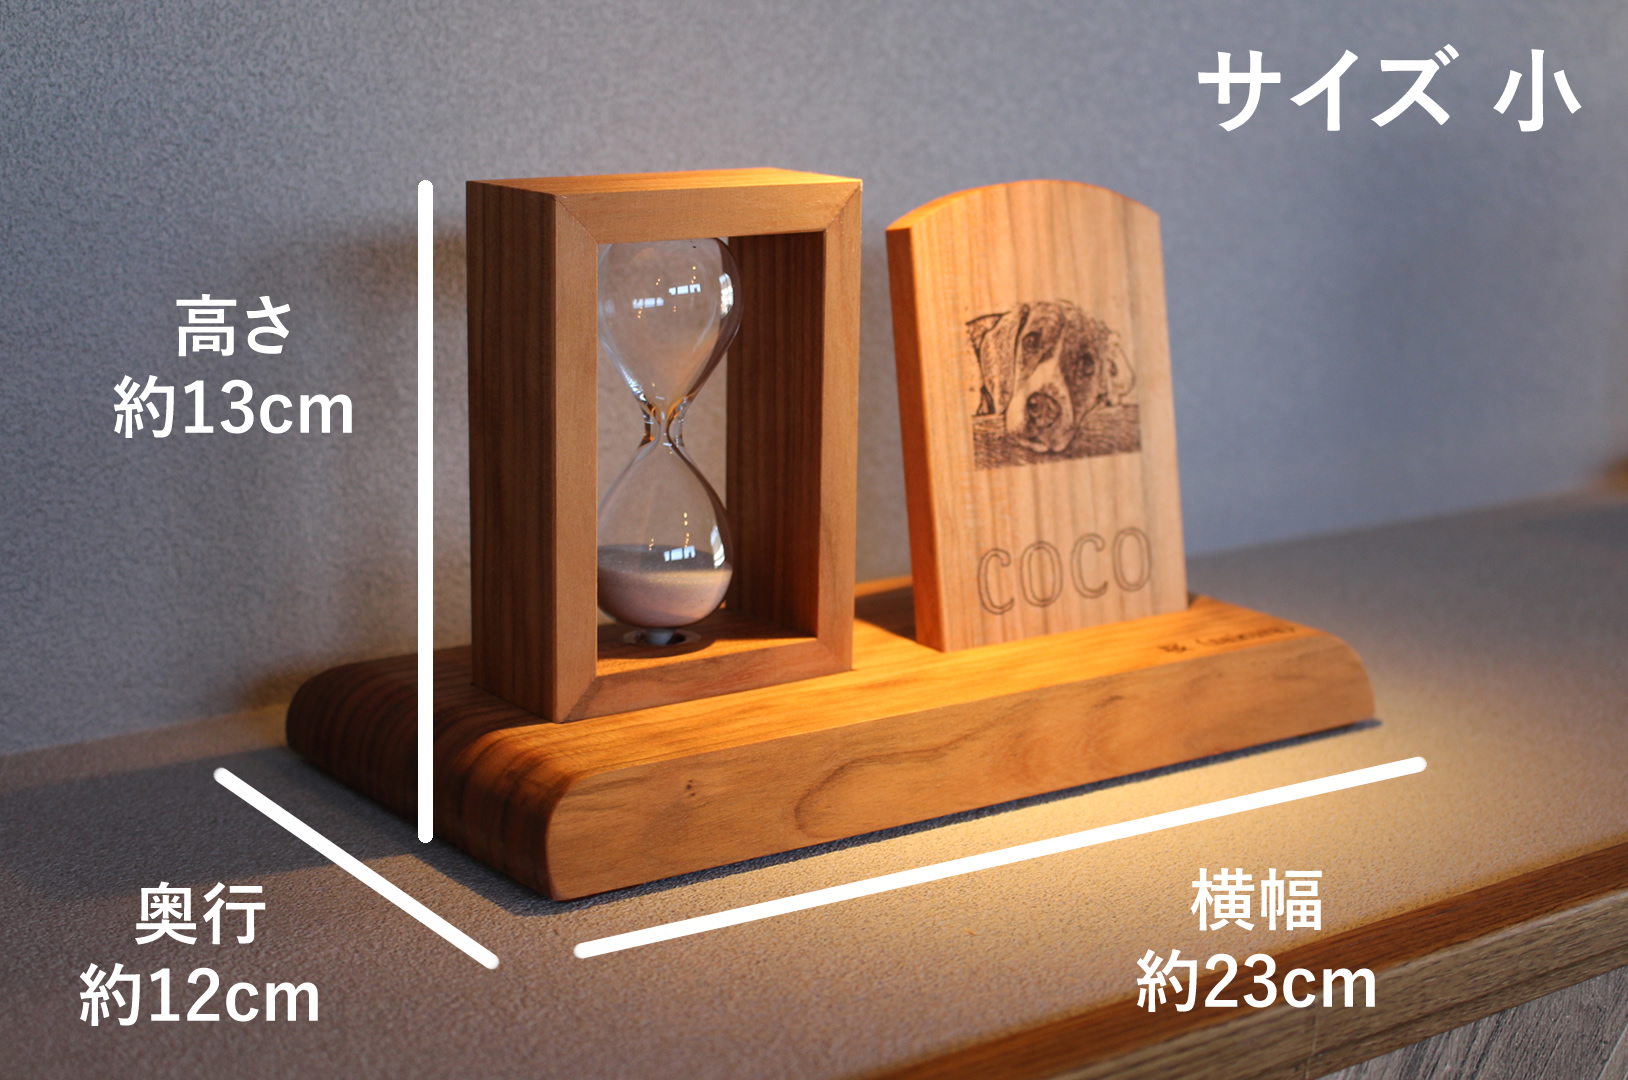 39270円 与え 遺骨砂時計天然木オーダーメイドペット日本に三人しかいない砂時計職人